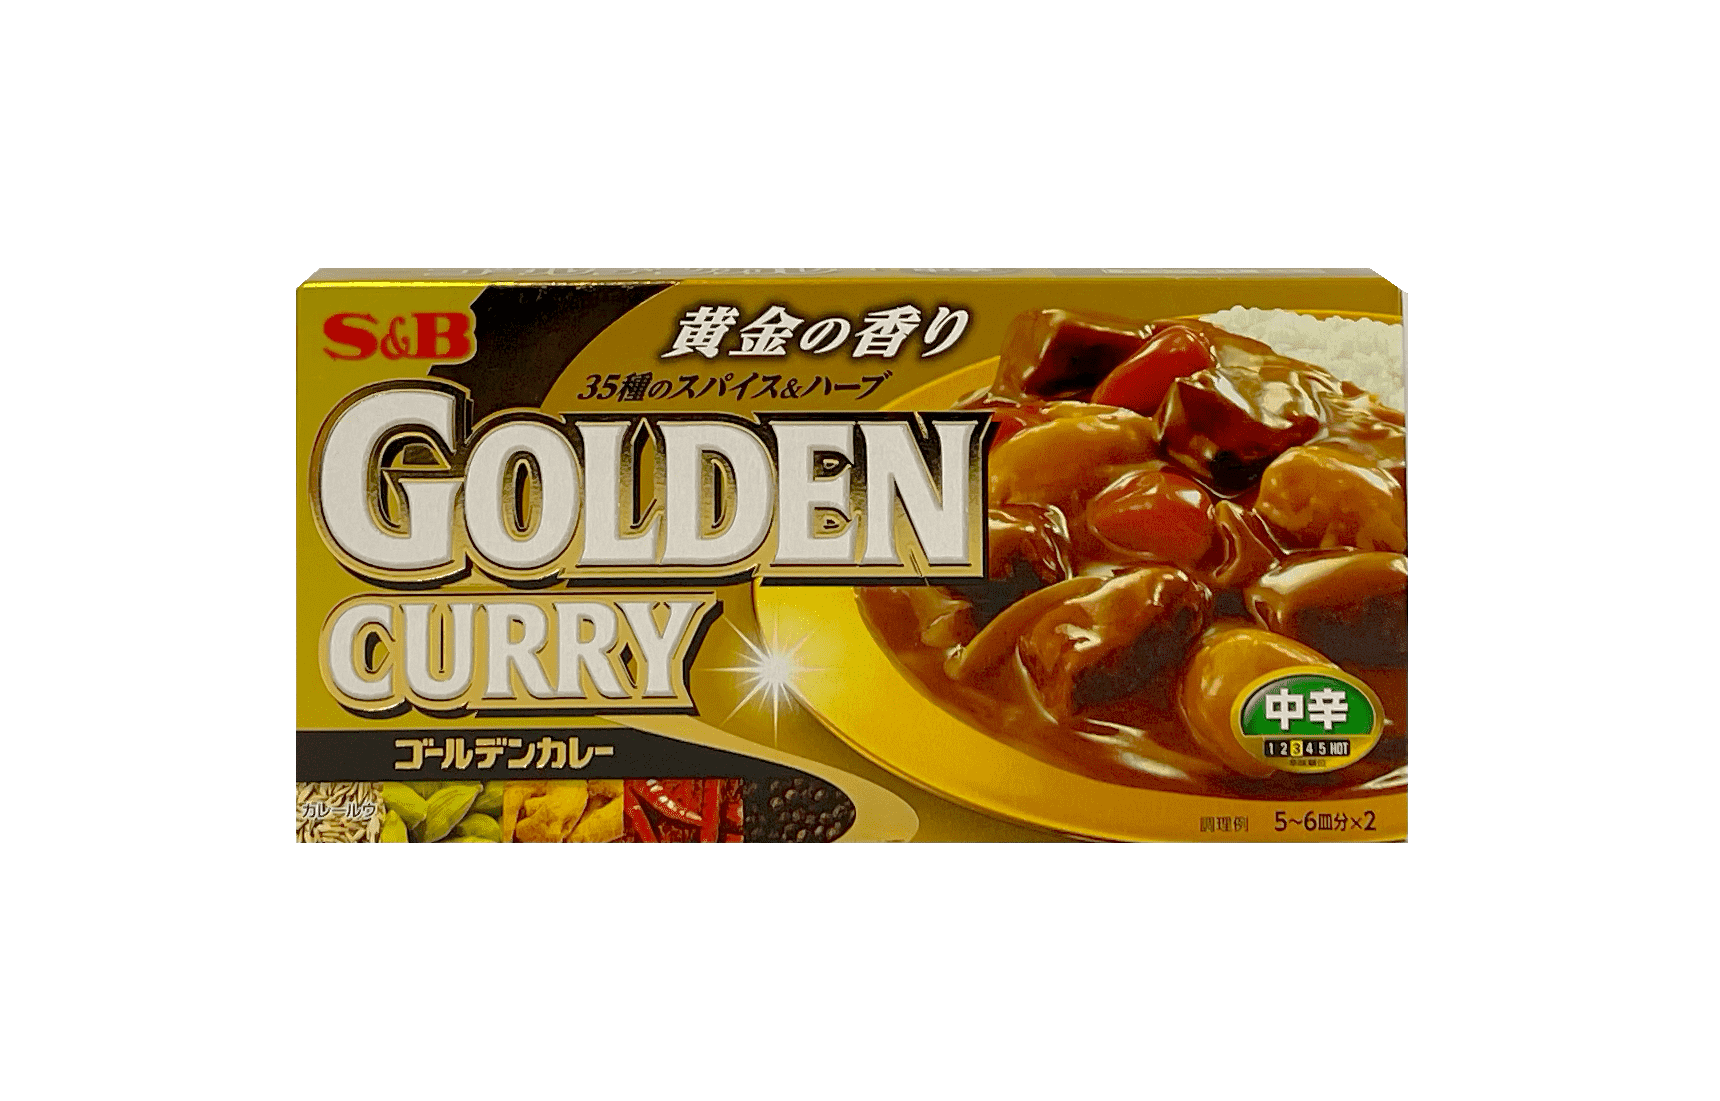 黄金咖喱 辣味 198g S&B 日本